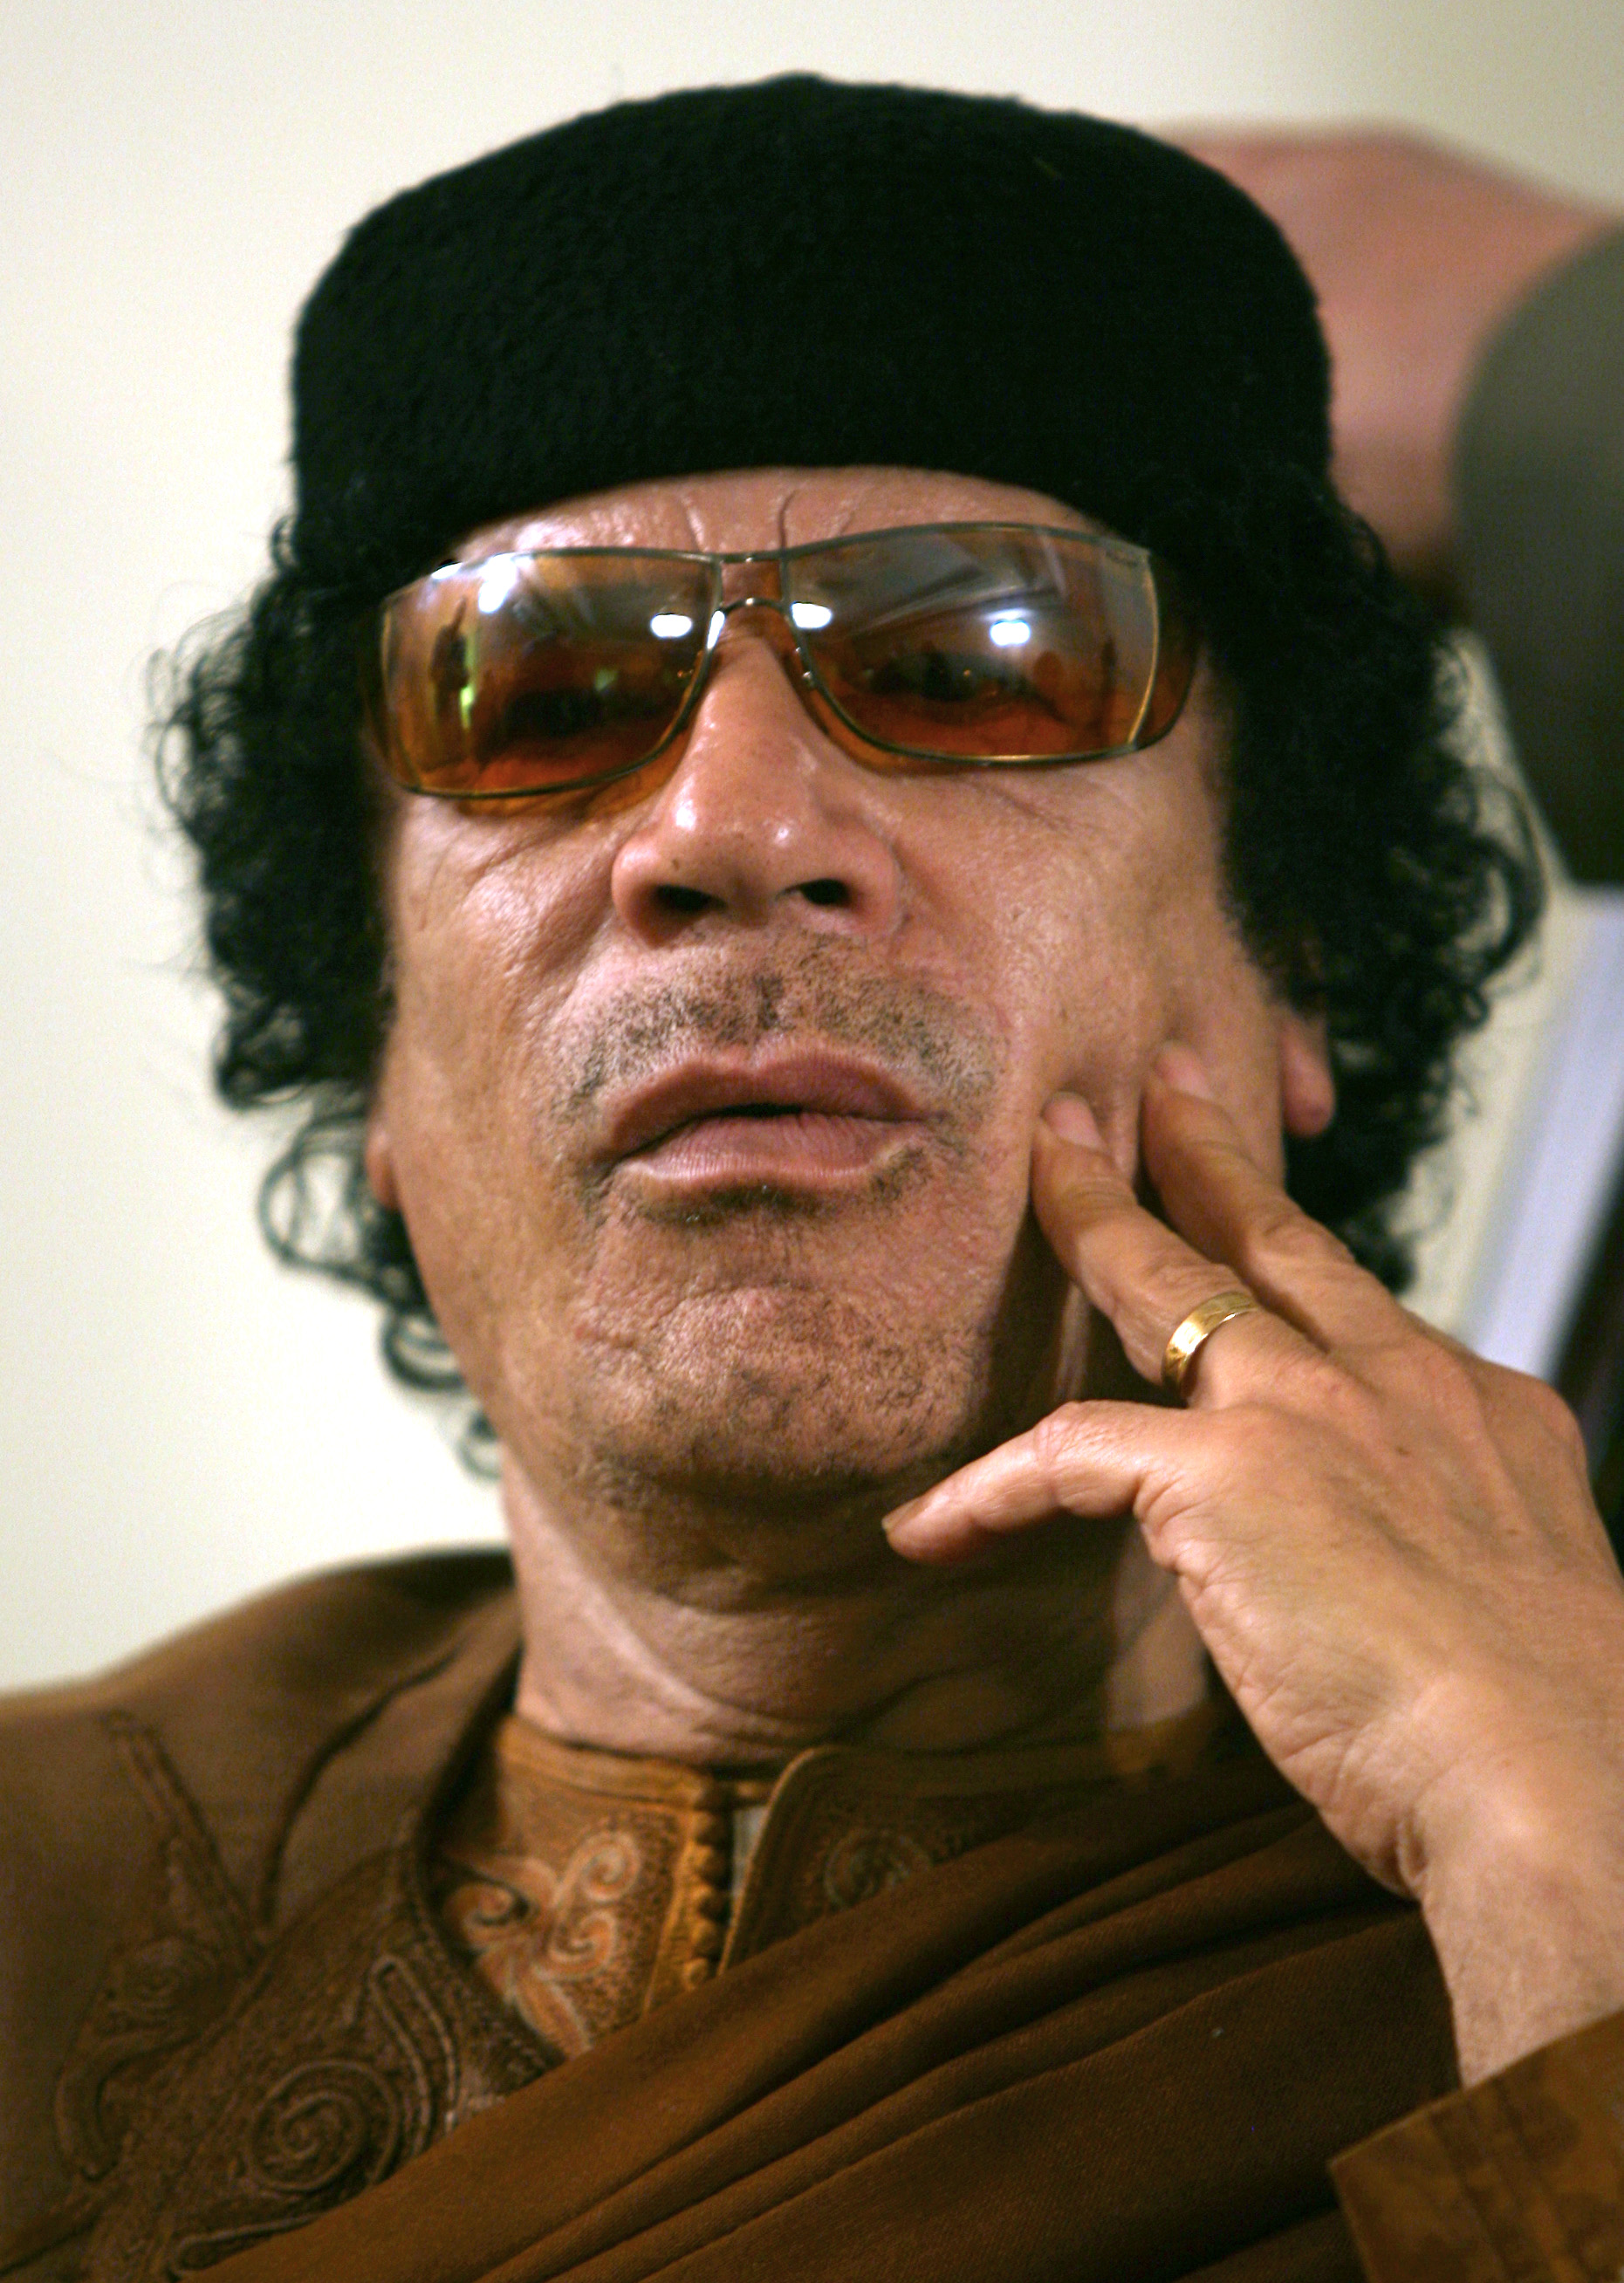 Det har gått ett år sedan Ghaddafi dödades. Nu avslöjas de systematiska våldtäkterna som ägde rum under diktatorns palats. 